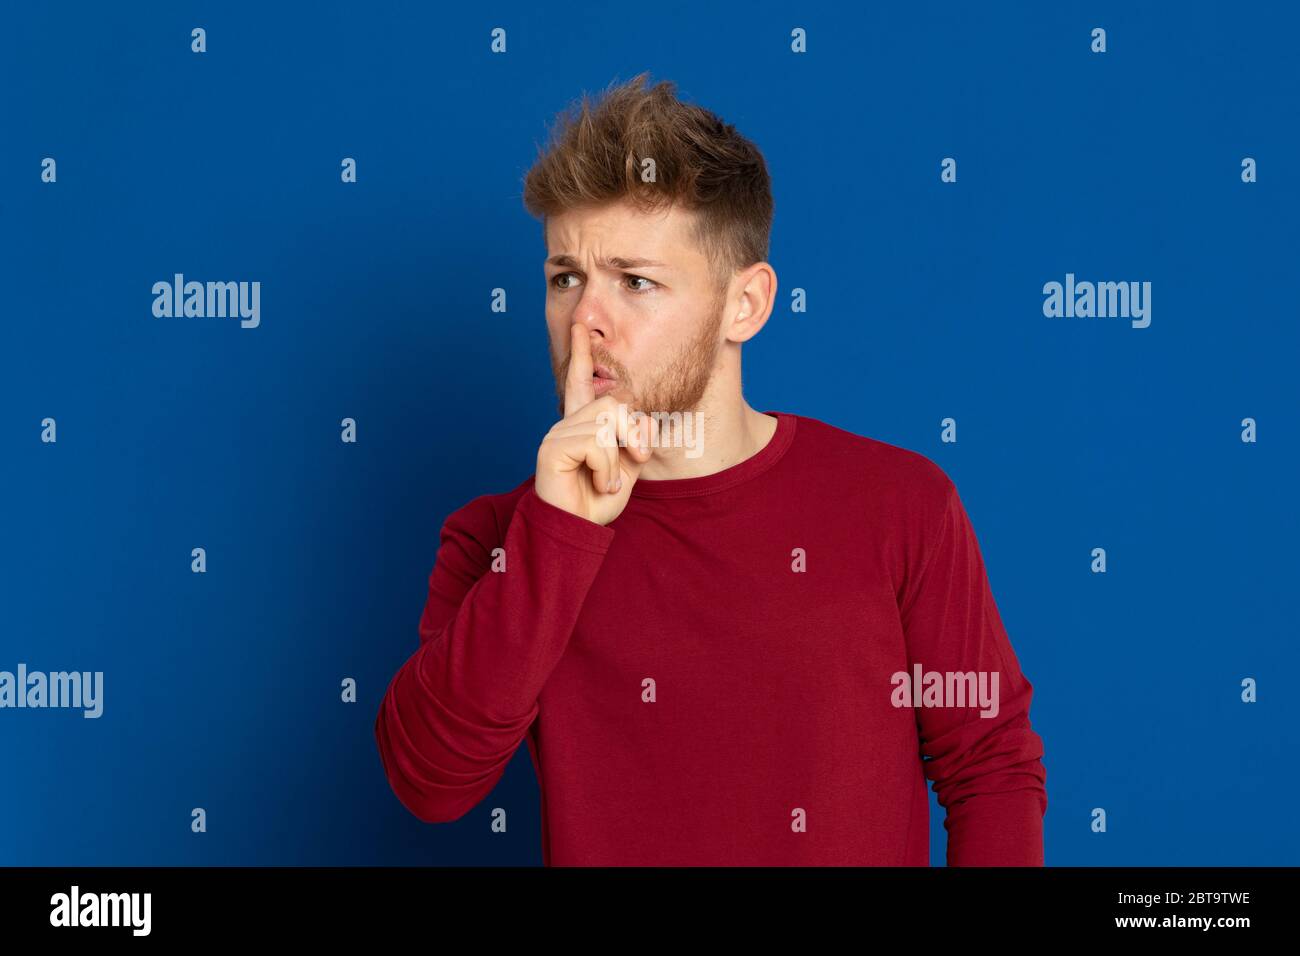 Giovane ragazzo attraente con una T-shirt rossa su sfondo blu Foto Stock